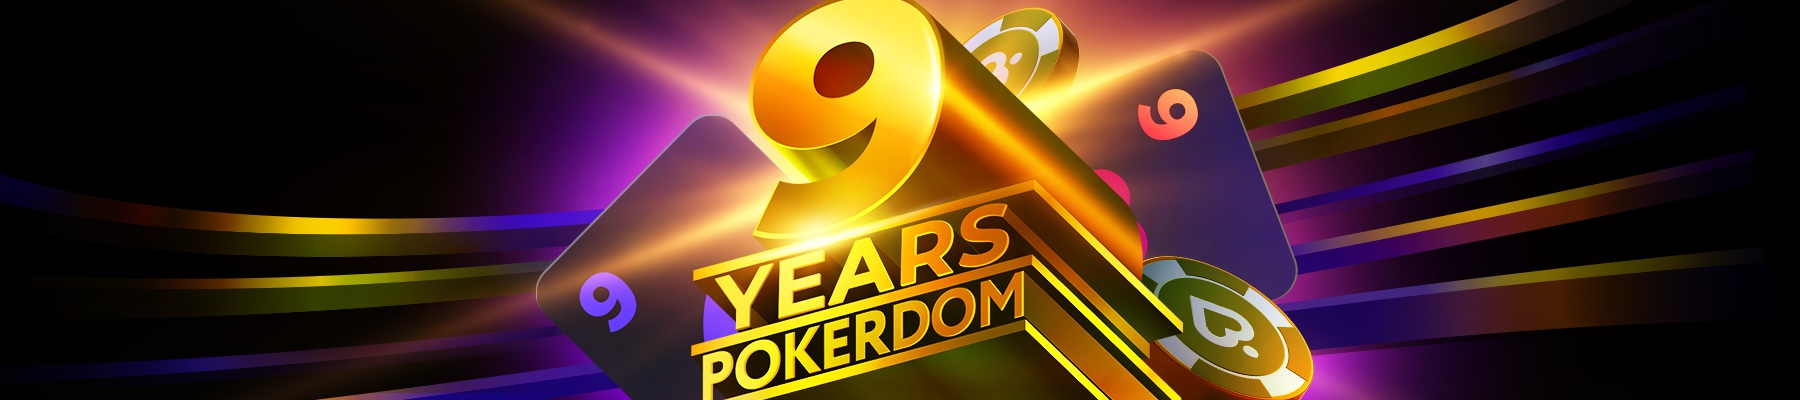 Вместе с вами мы празднуем девять лет существования платформы Покердом!